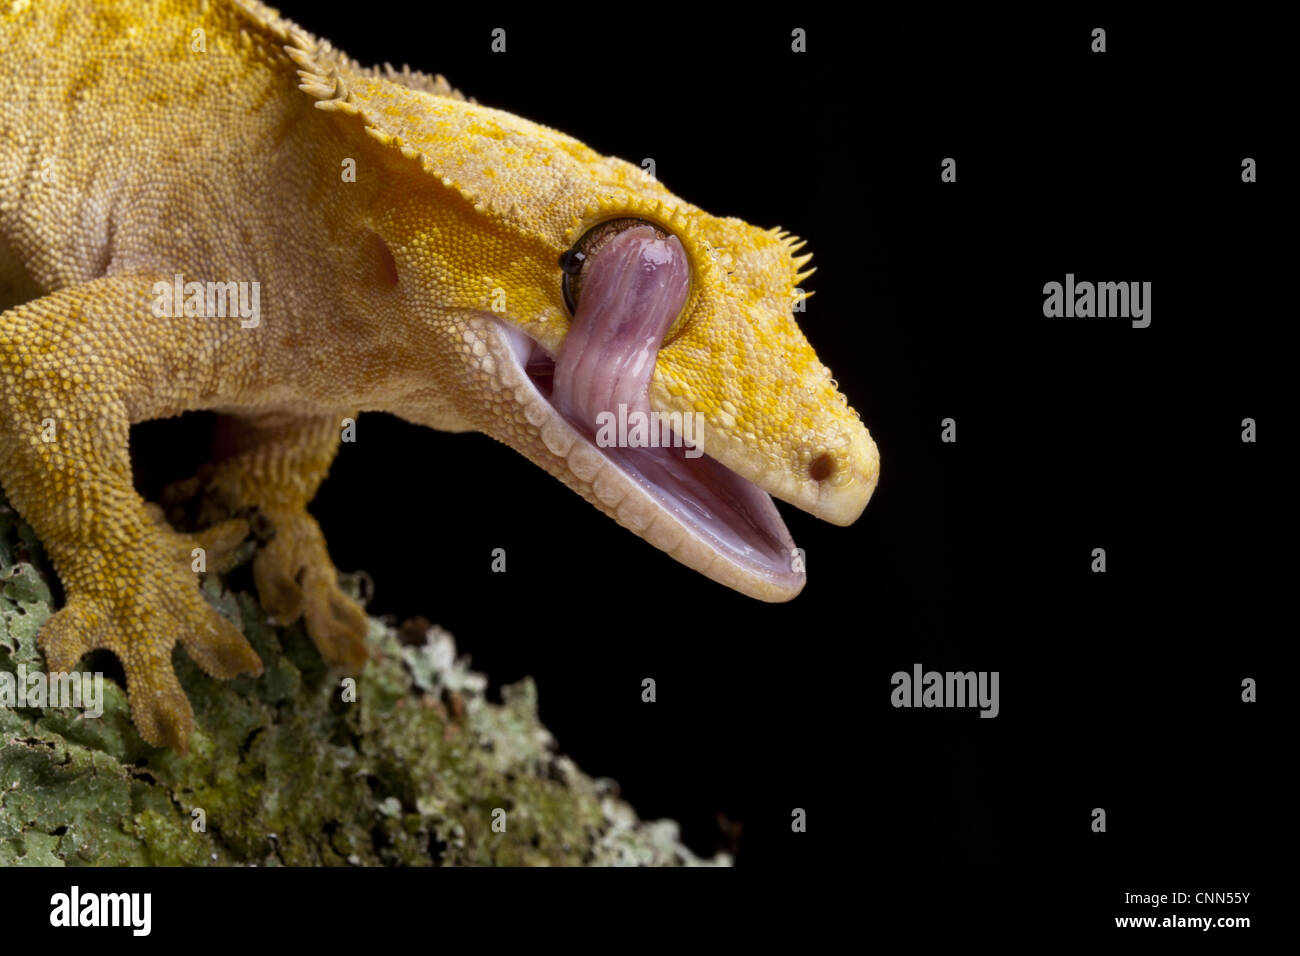 Nuovo Caledonian Crested Gecko (Rhacodactylus ciliatus) adulto, close-up di testa, leccare occhio con linguetta, Nuova Caledonia Foto Stock